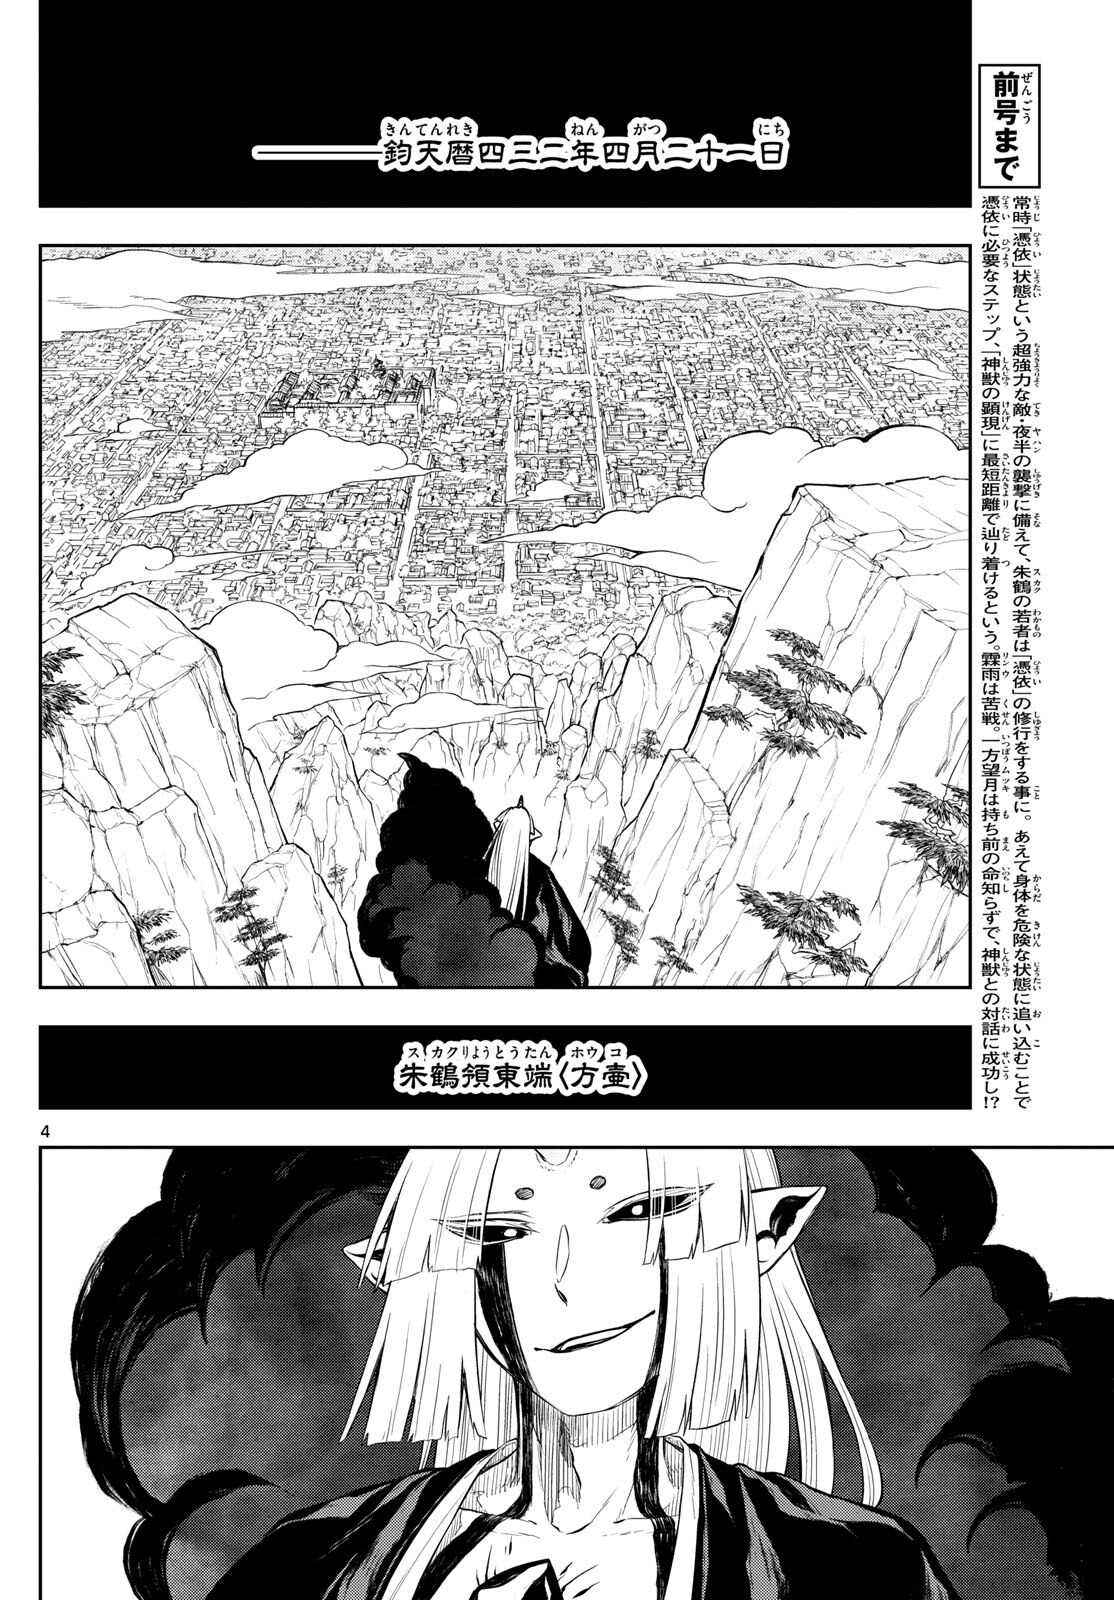 Akatsuki Jihen - Chapter 42 - Page 4